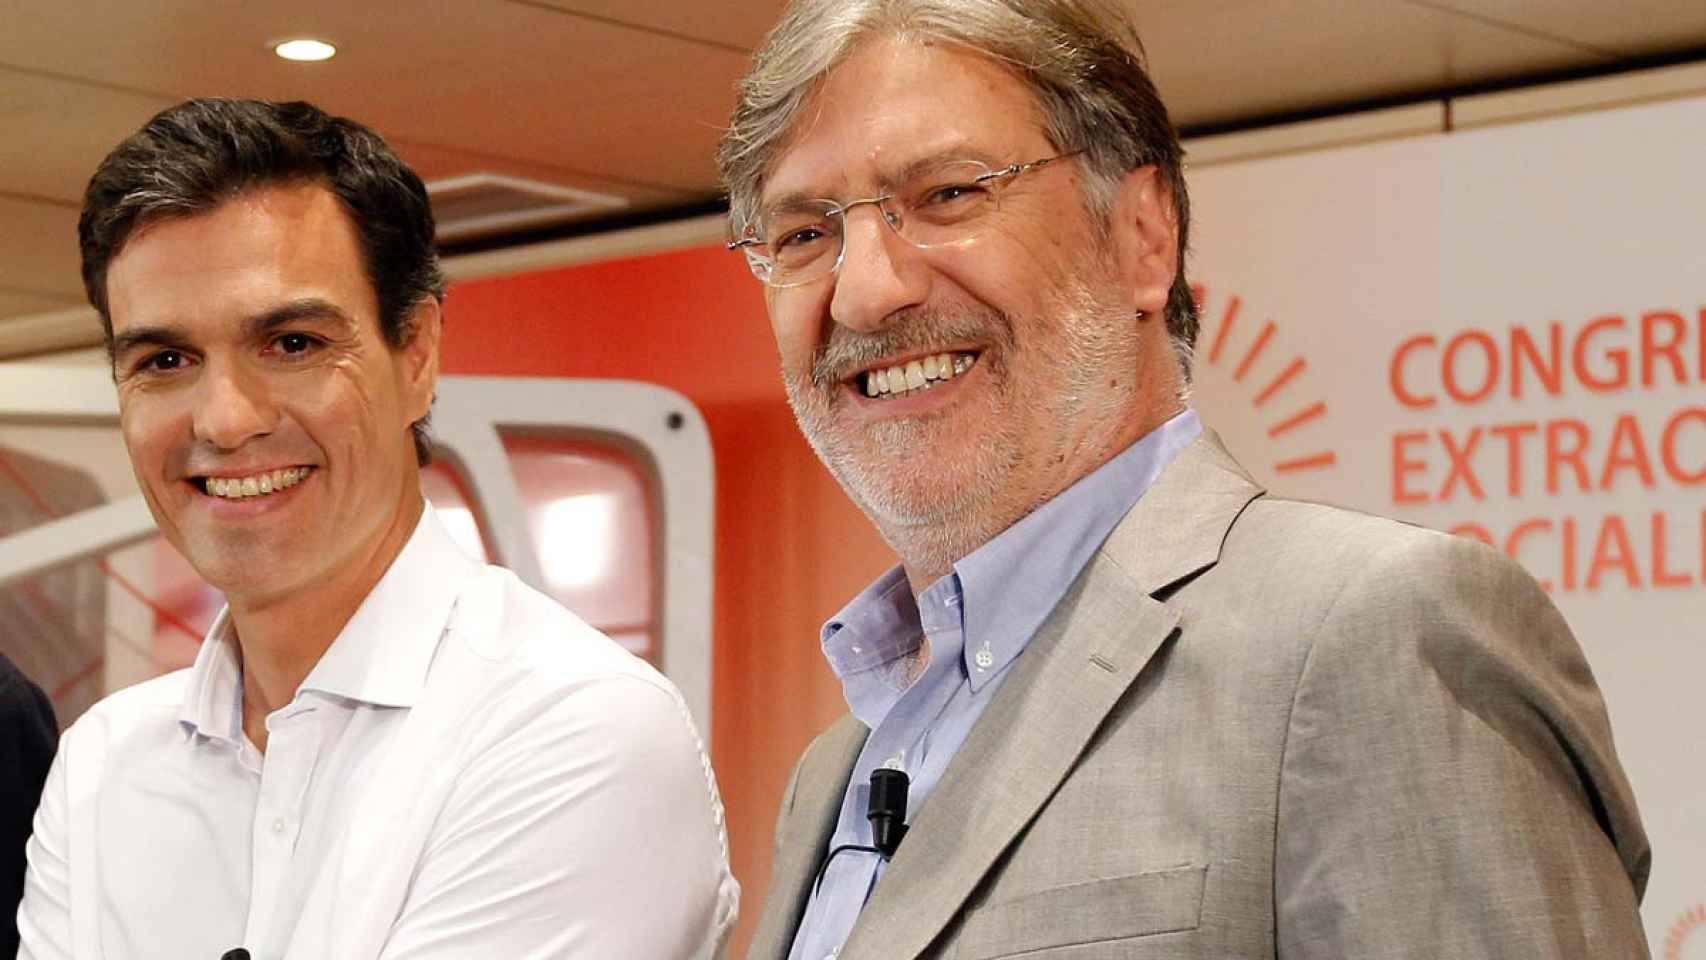 Pedro Sánchez y José Antonio Pérez Tapias